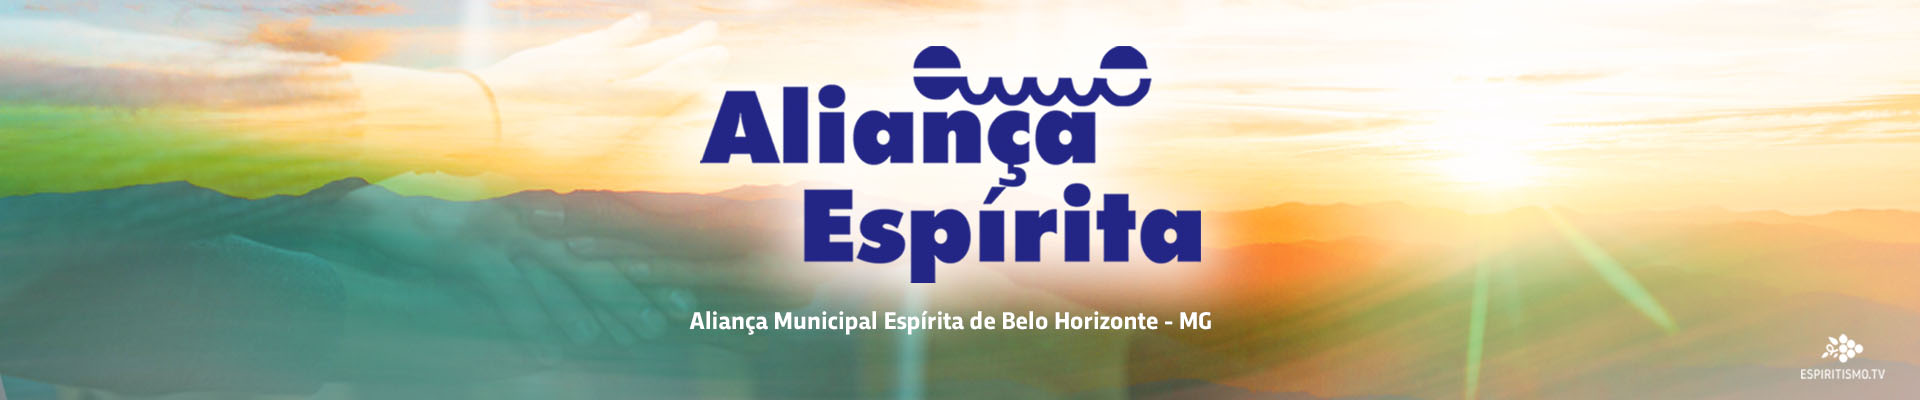 AME BH - Aliança Municipal Espírita de Belo Horizonte 1